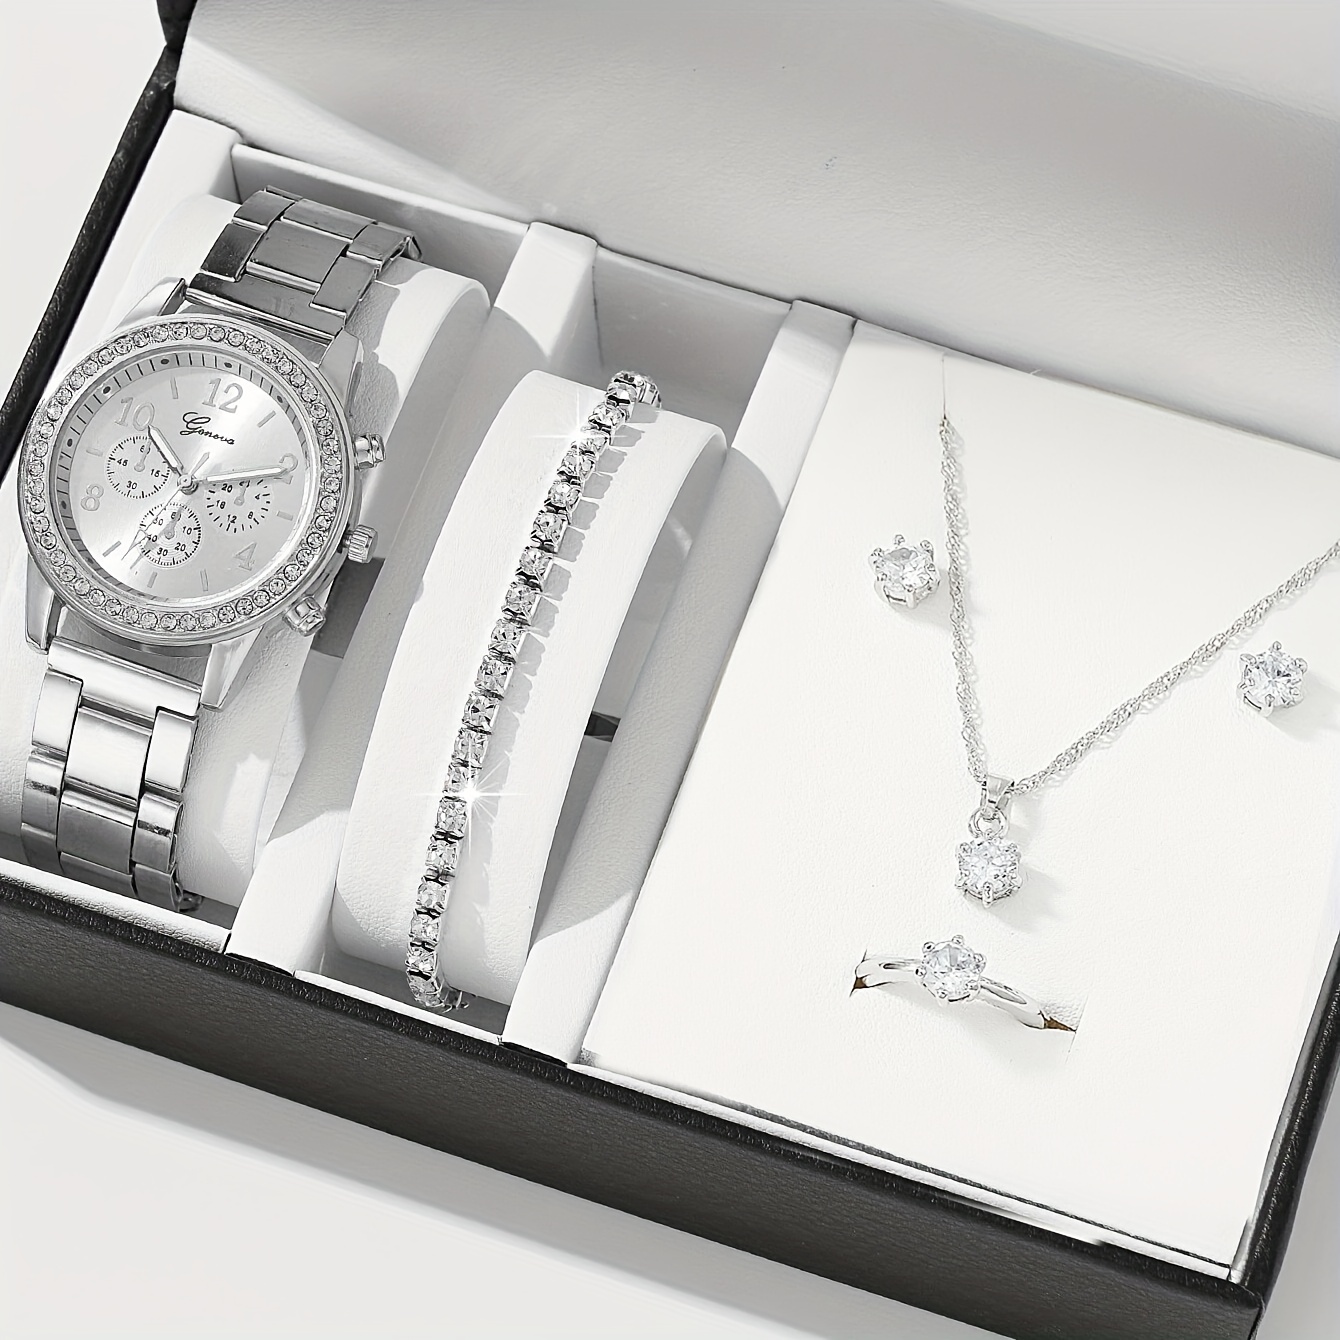 ネックレス&ブレスレット&宝石つき腕時計 - 腕時計(アナログ)